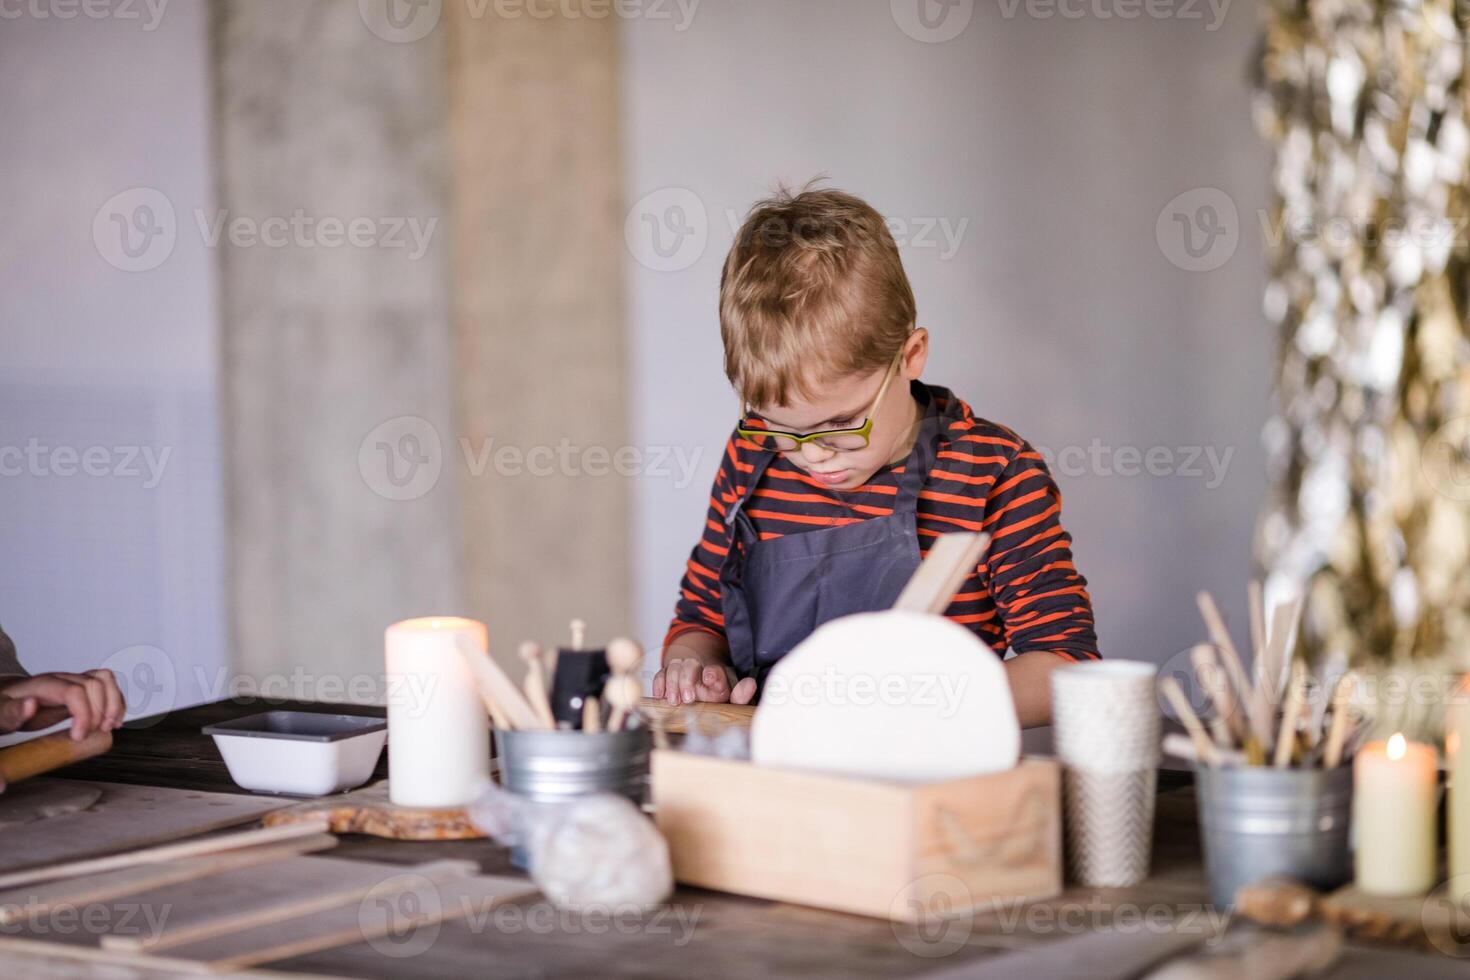 Fait main céramique 5 ans garçon avec des lunettes explorant art photo